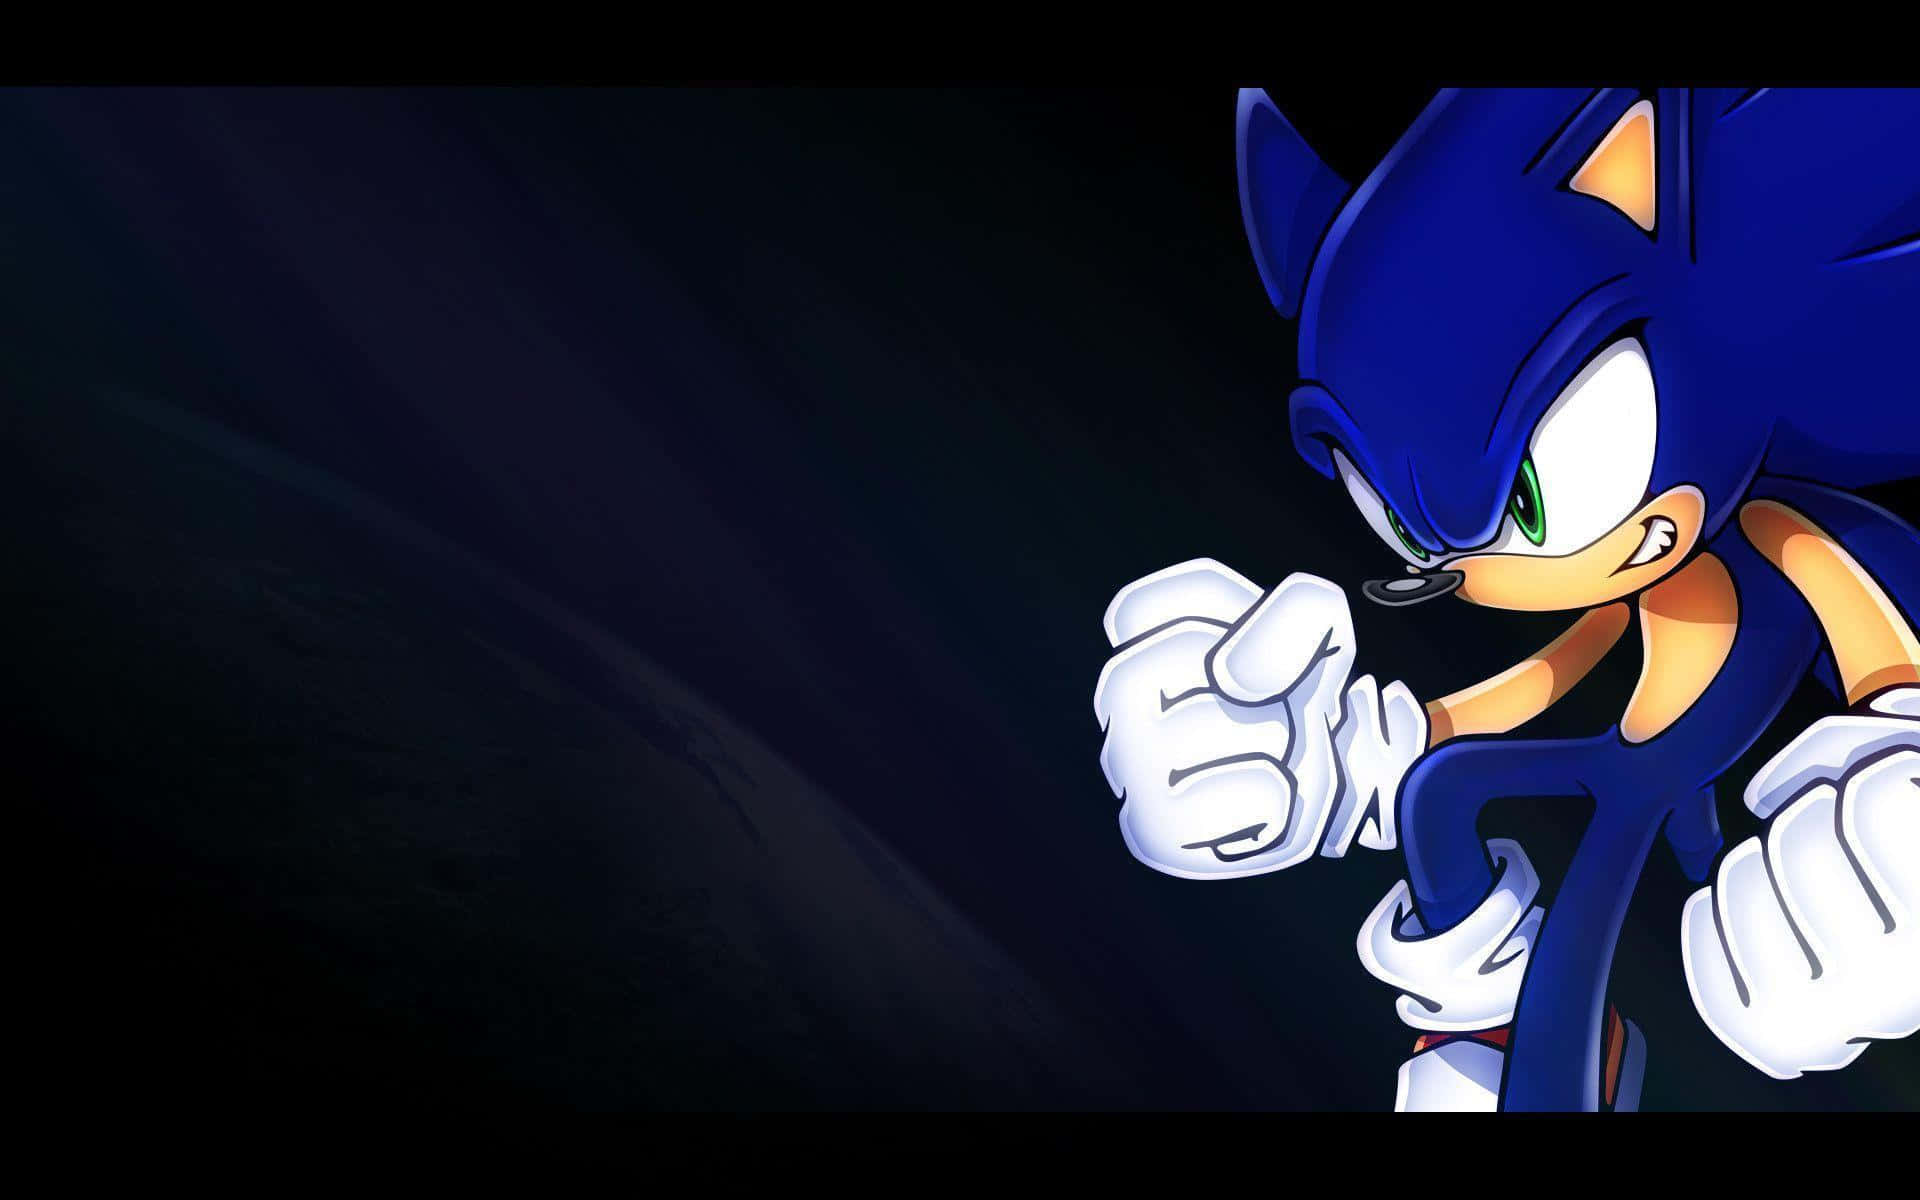 Sonicthe Hedgehog Acelerando Pelas Cores Vivas De Uma Paisagem Pixelada.